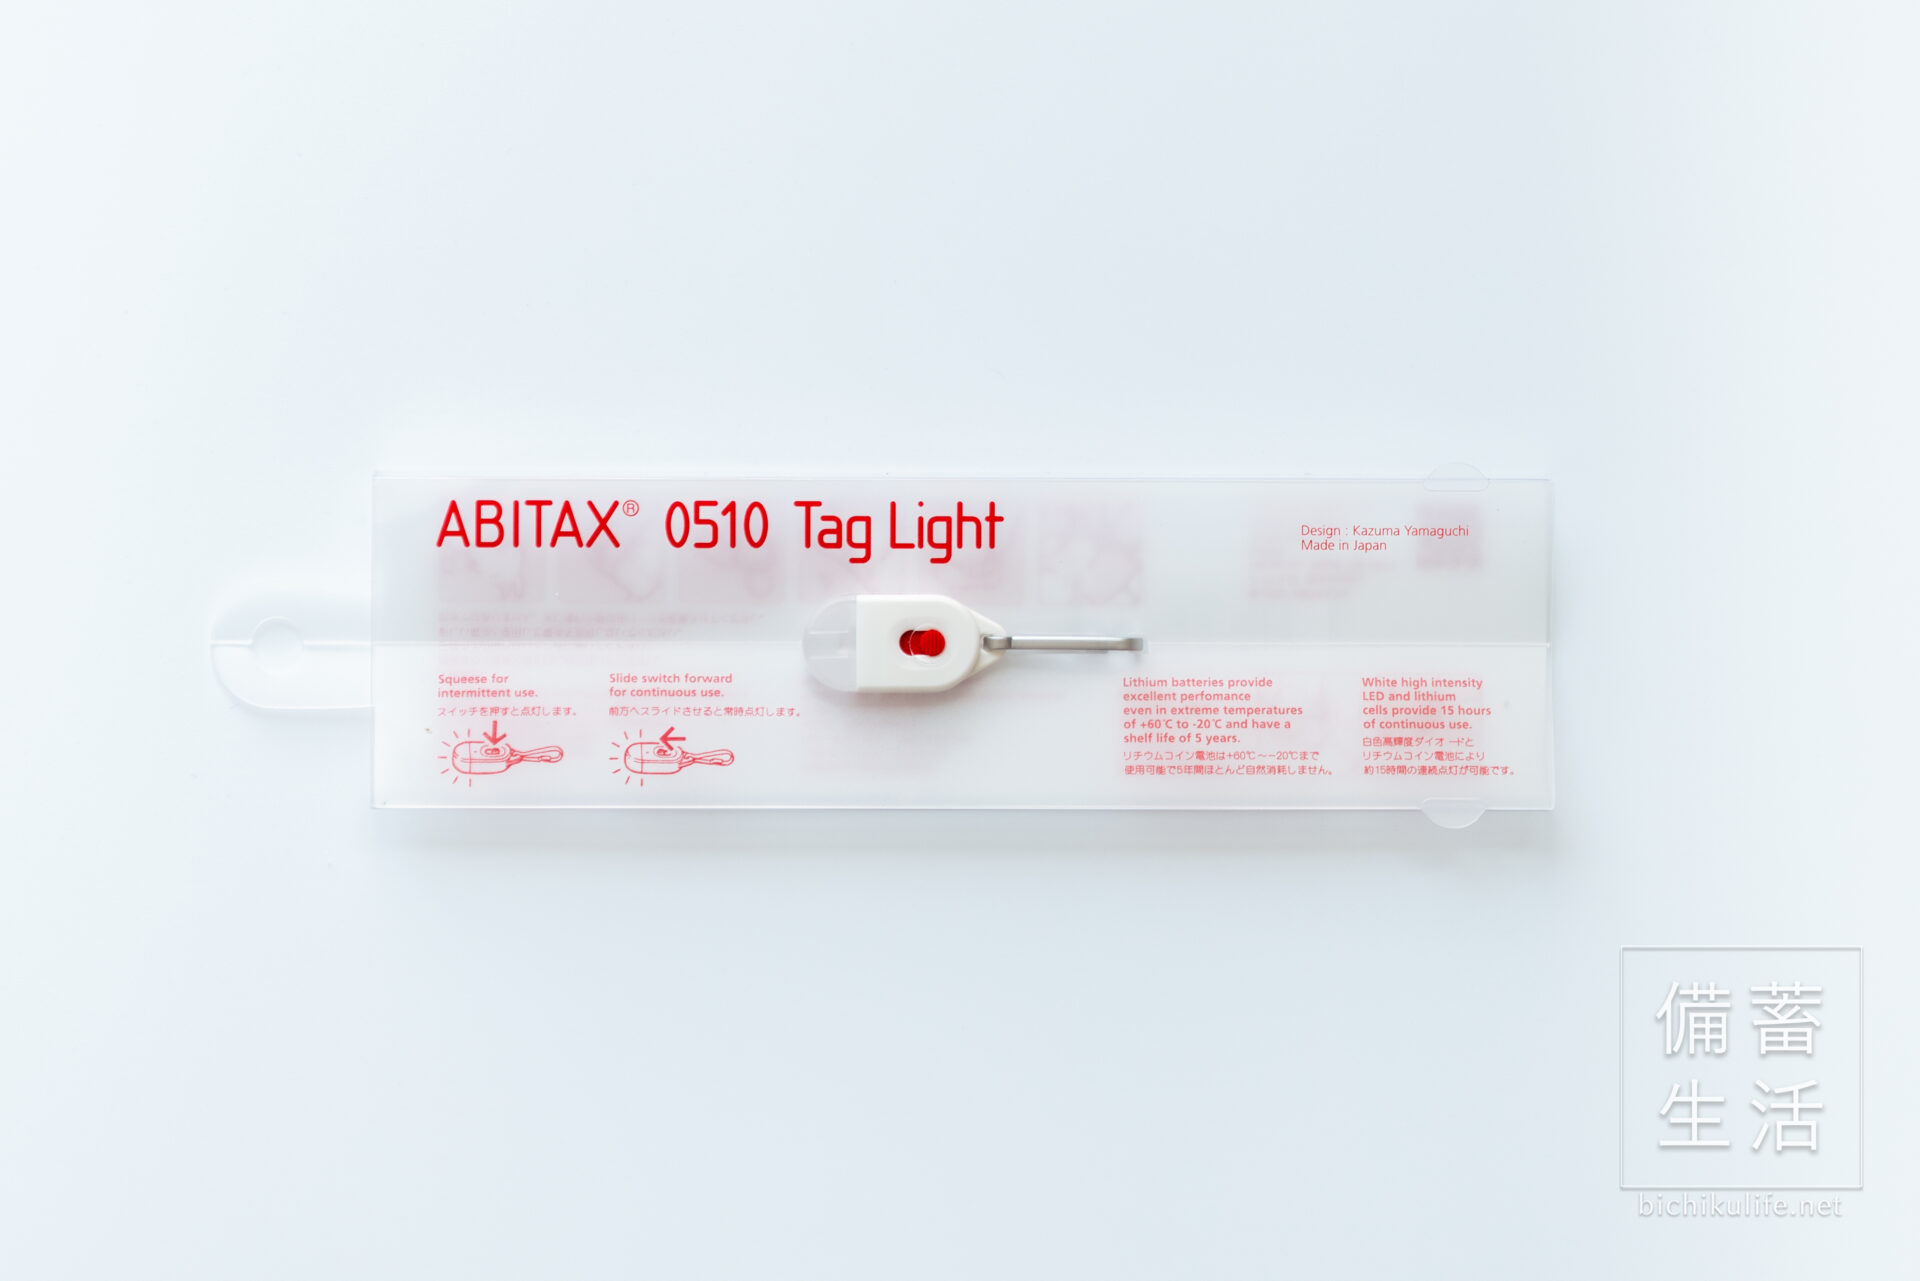 ABITAX 0510 Tag Light